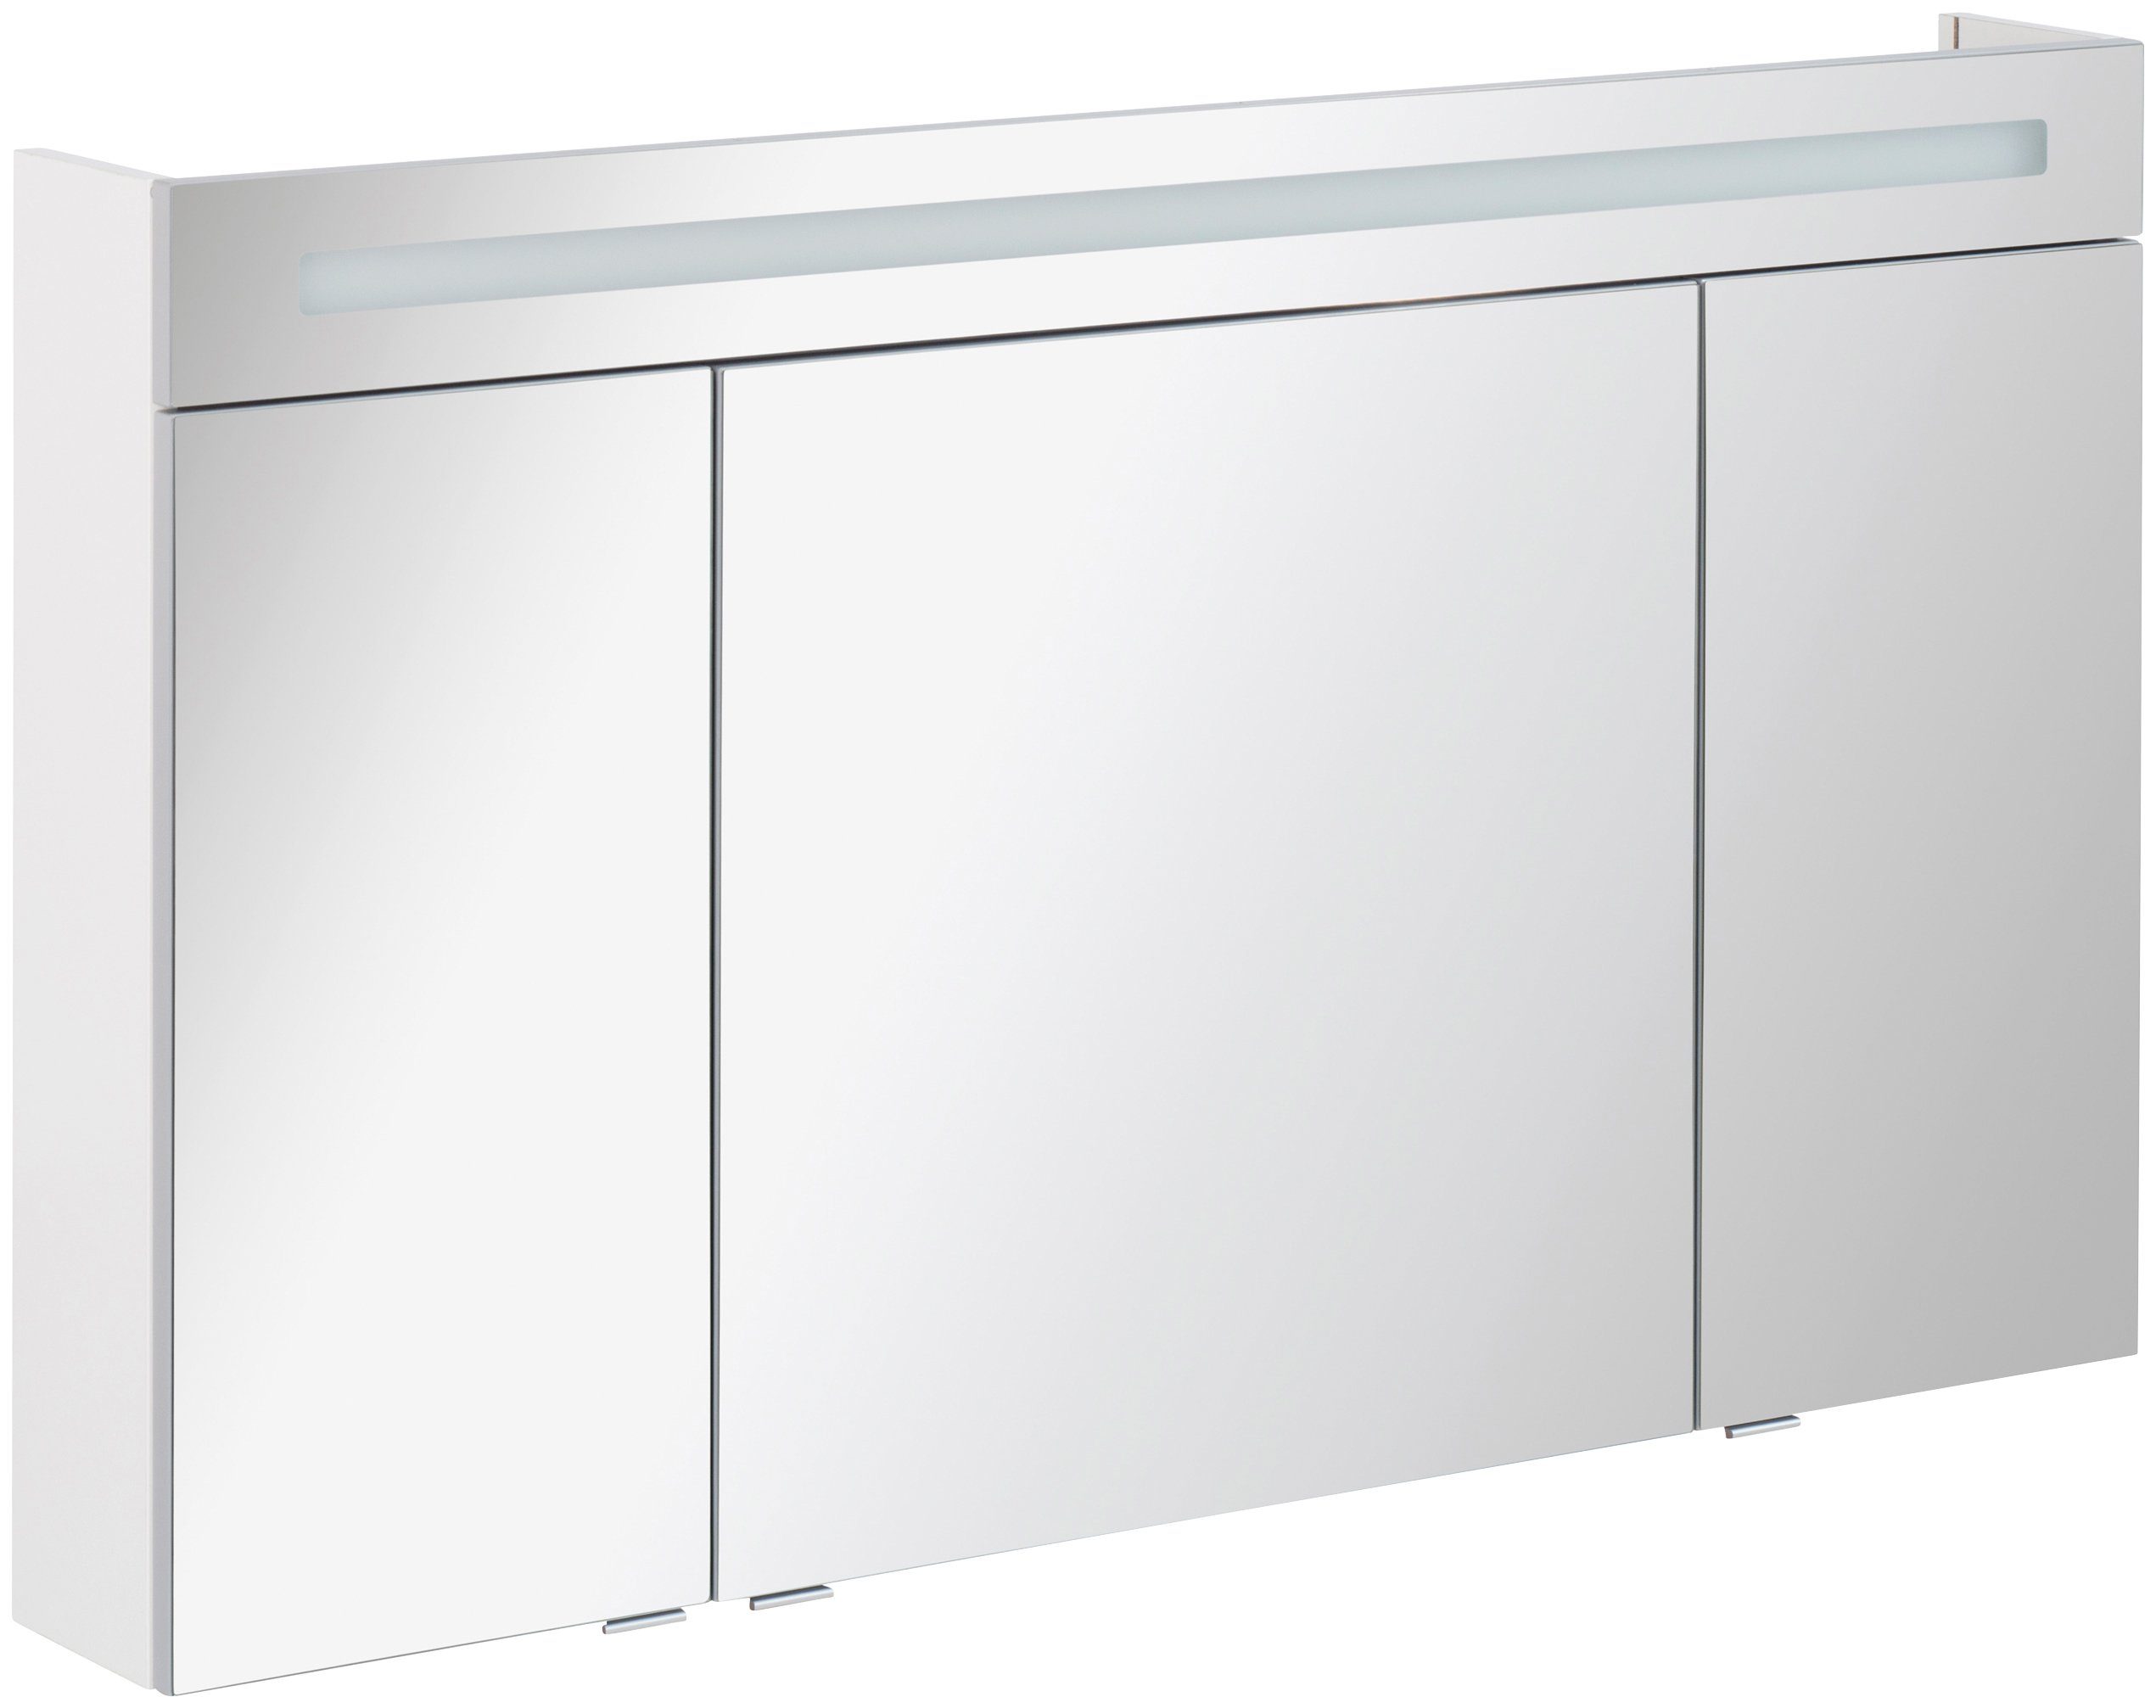 FACKELMANN Spiegelkast CL 120 - wit Breedte 120 cm, 3 deuren, dubbelzijdig spiegelend